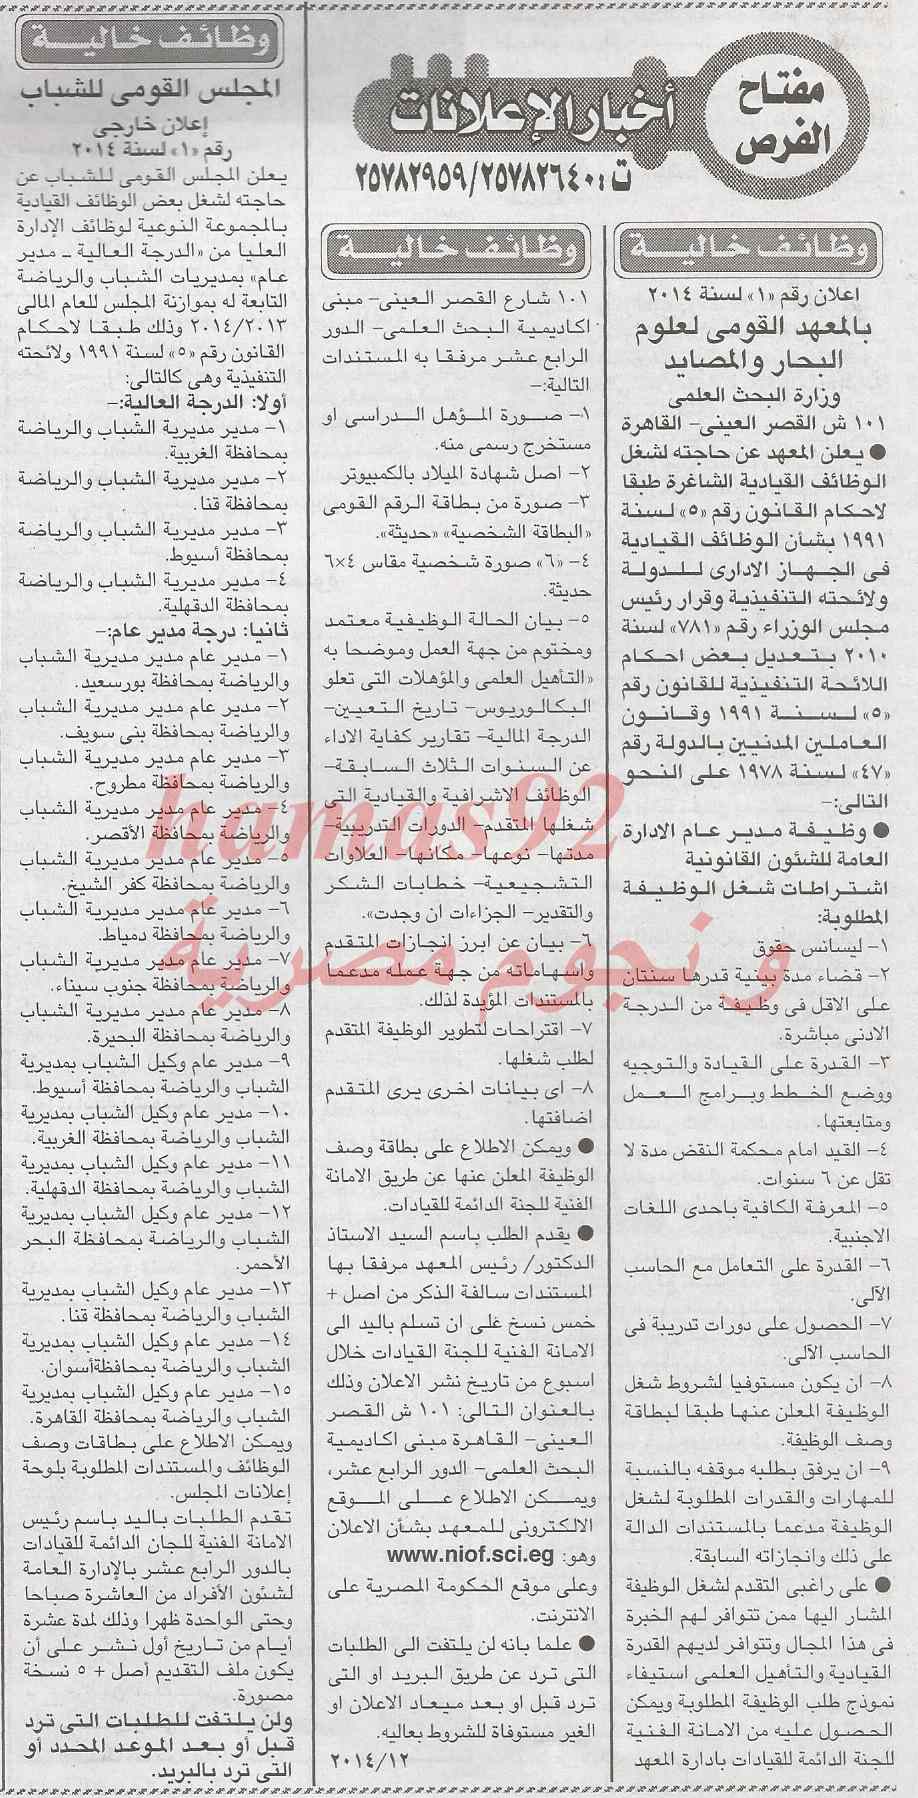 وظائف خالية جريدة الاخبار اليوم الاثنين 17-2-2014 , وظائف خالية 17 فبراير 2014